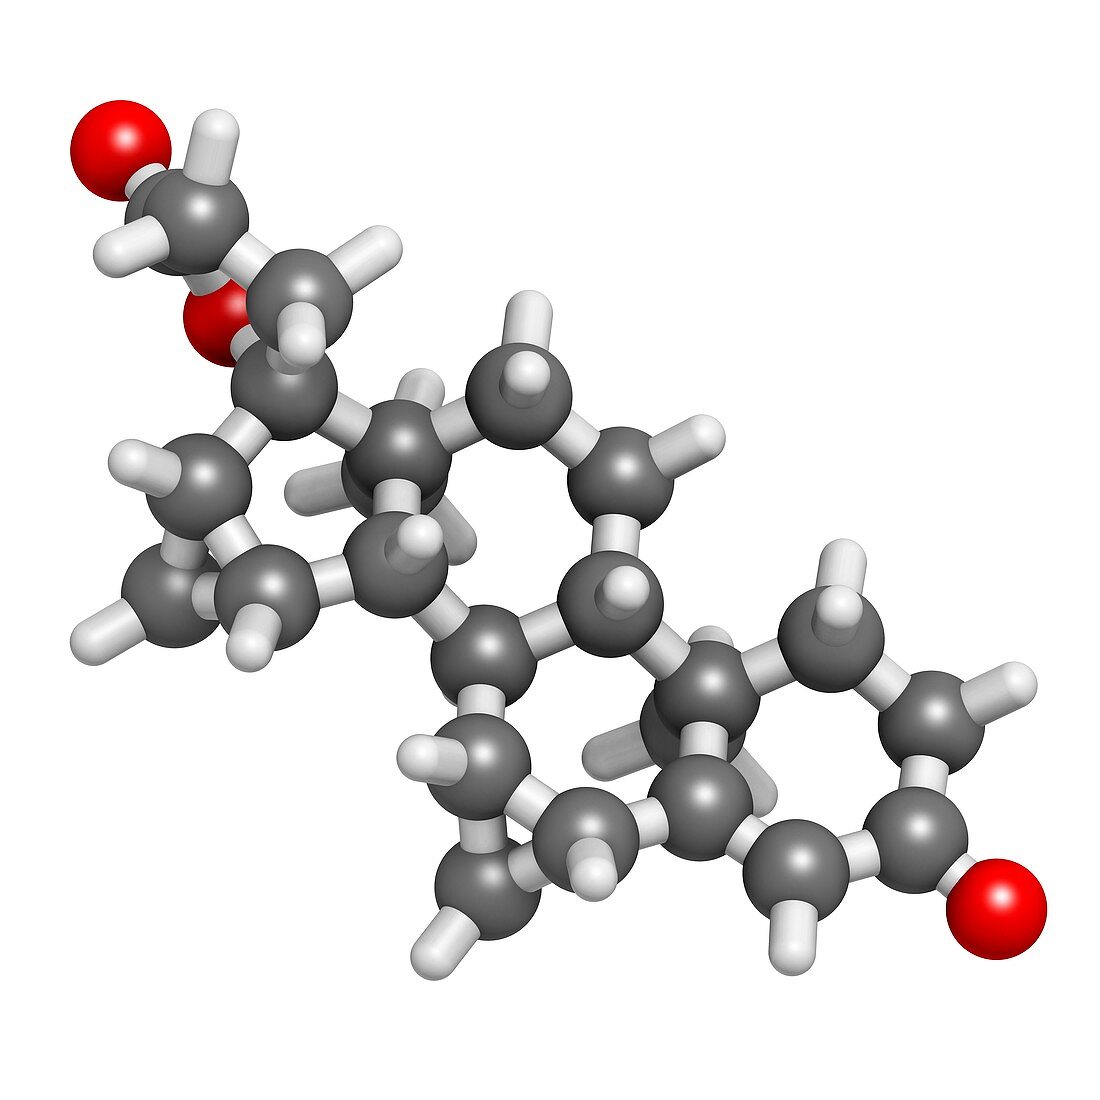 Drospirenone contraceptive drug molecule